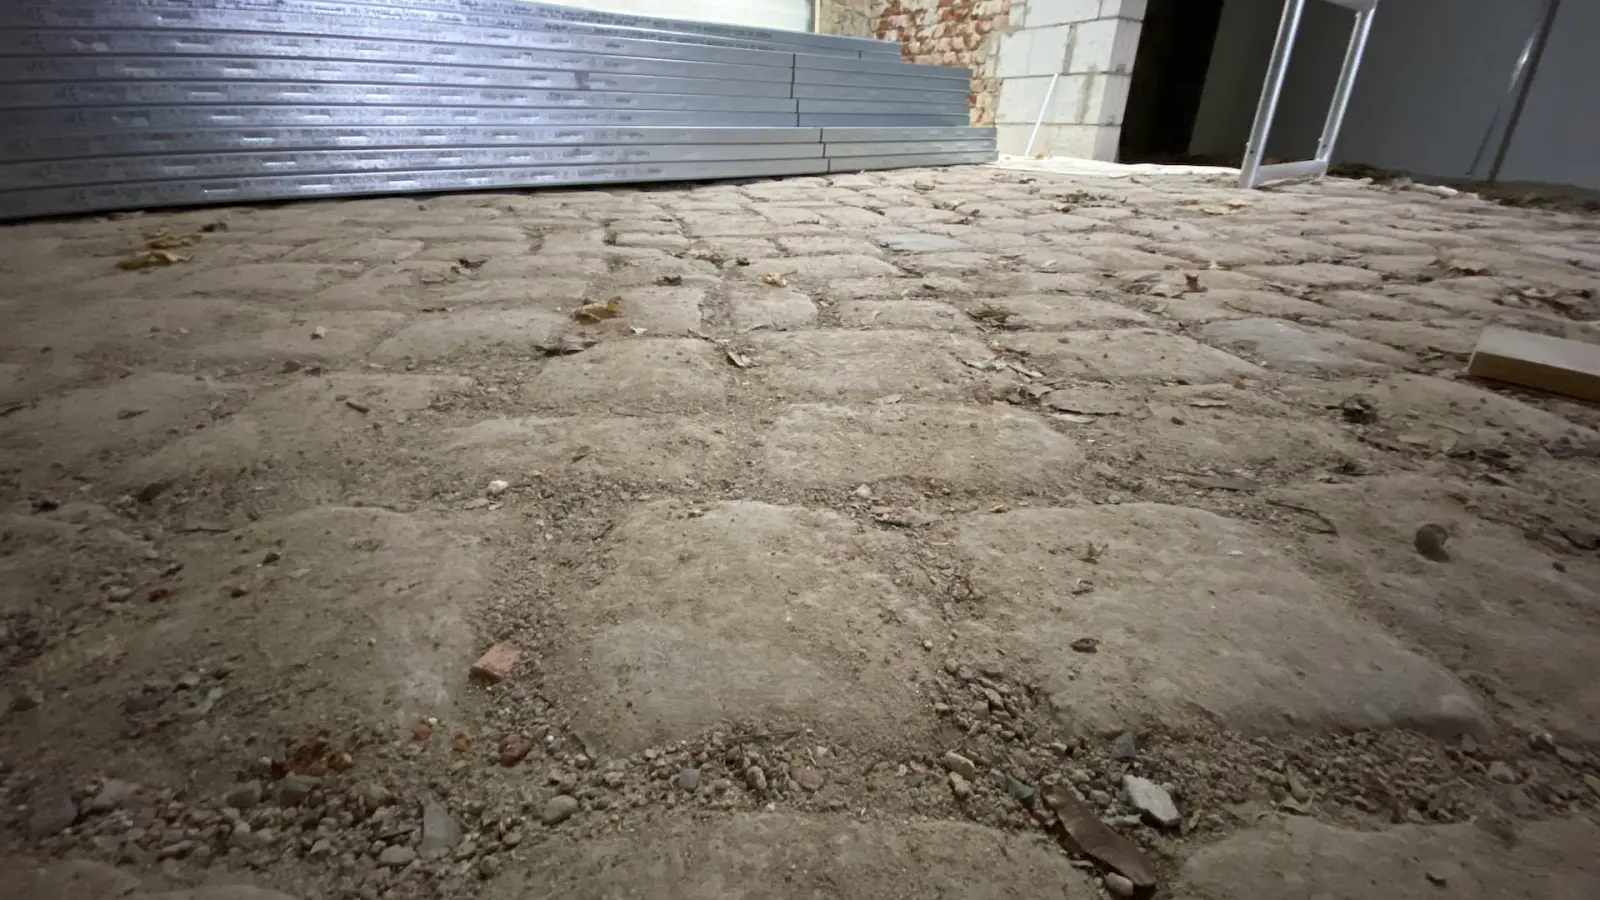 Der Fußboden sieht unspektakulär aus, ist aber 300 Jahre alt und damit für den Schlossverein erhaltenswert. (Foto: taucha-kompakt.de)